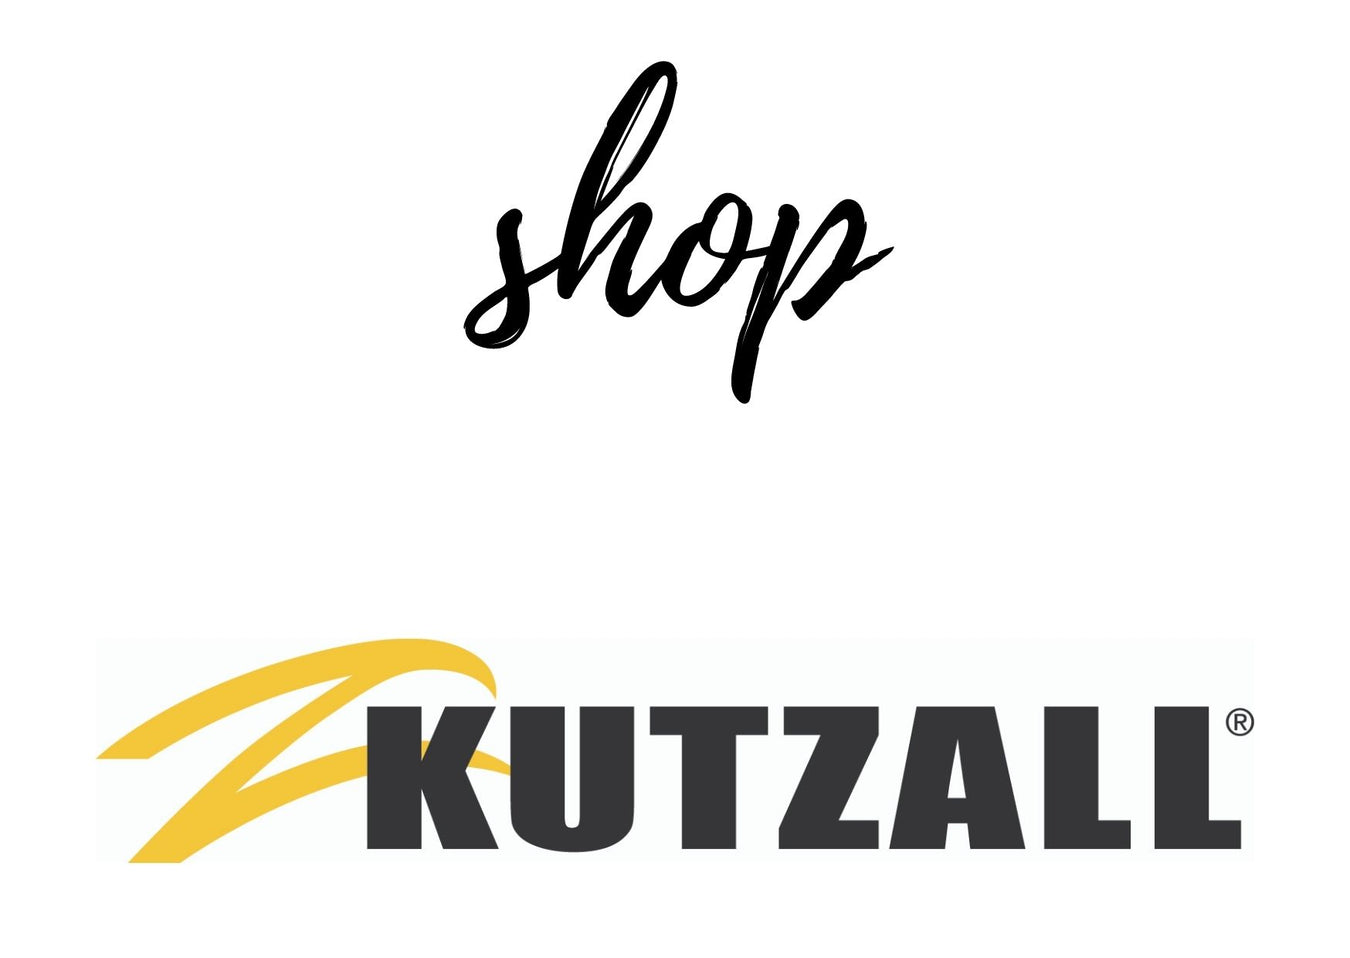 Kutzall